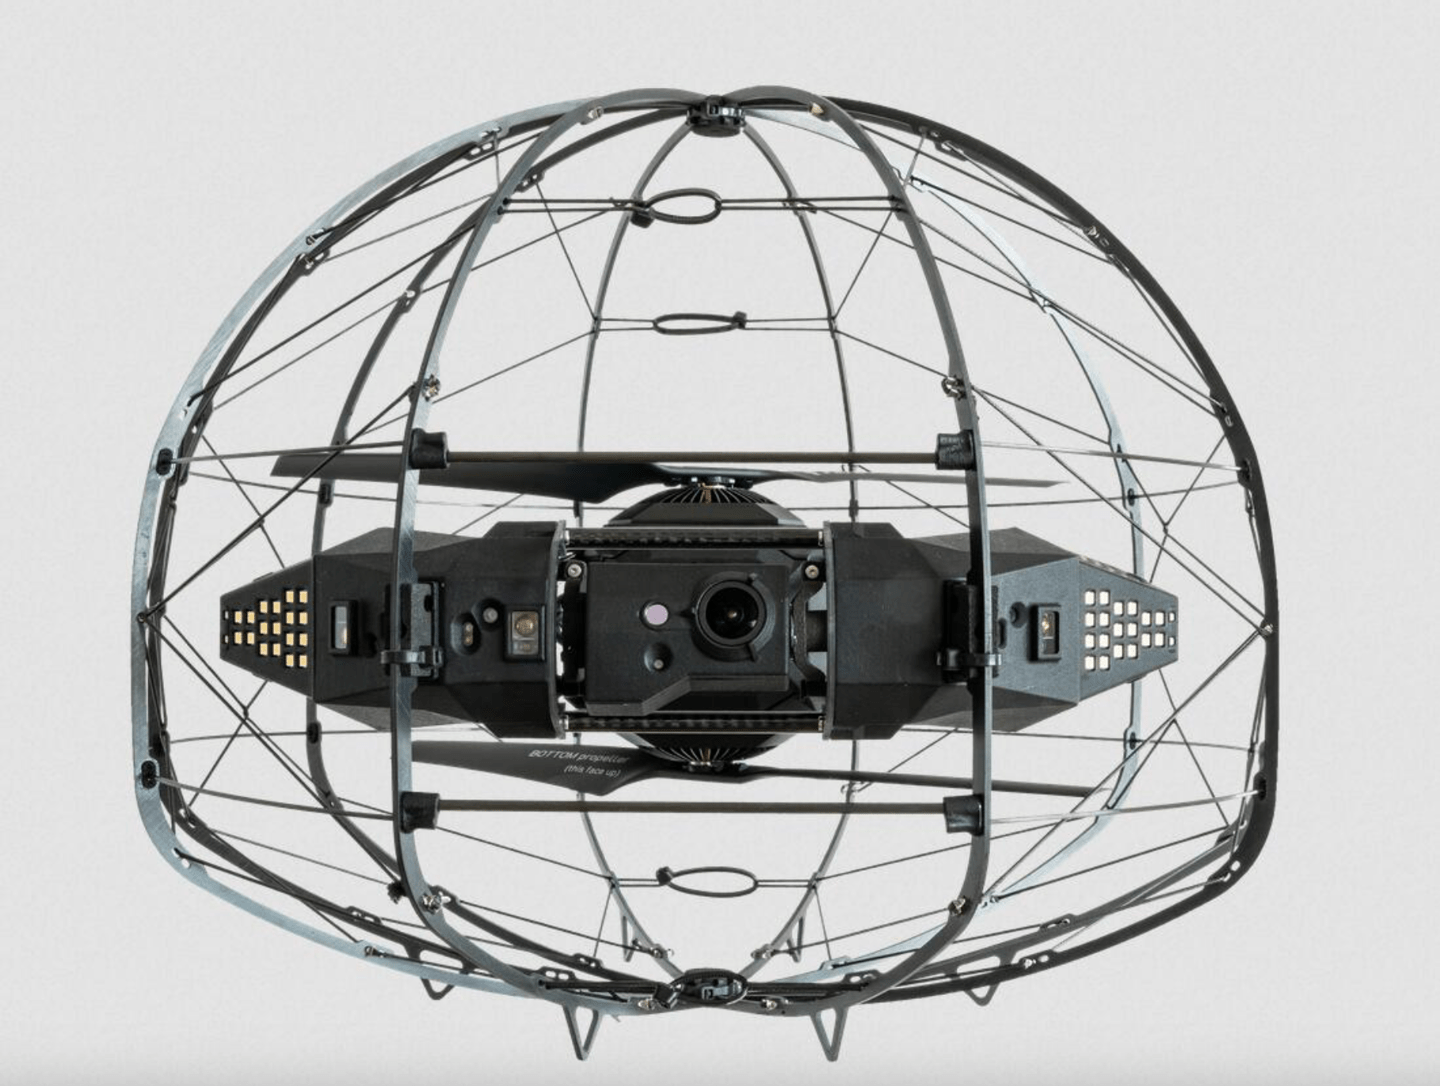 Flybotix 公司推出双旋翼室内无人机ASIO，采用“笼式设计”